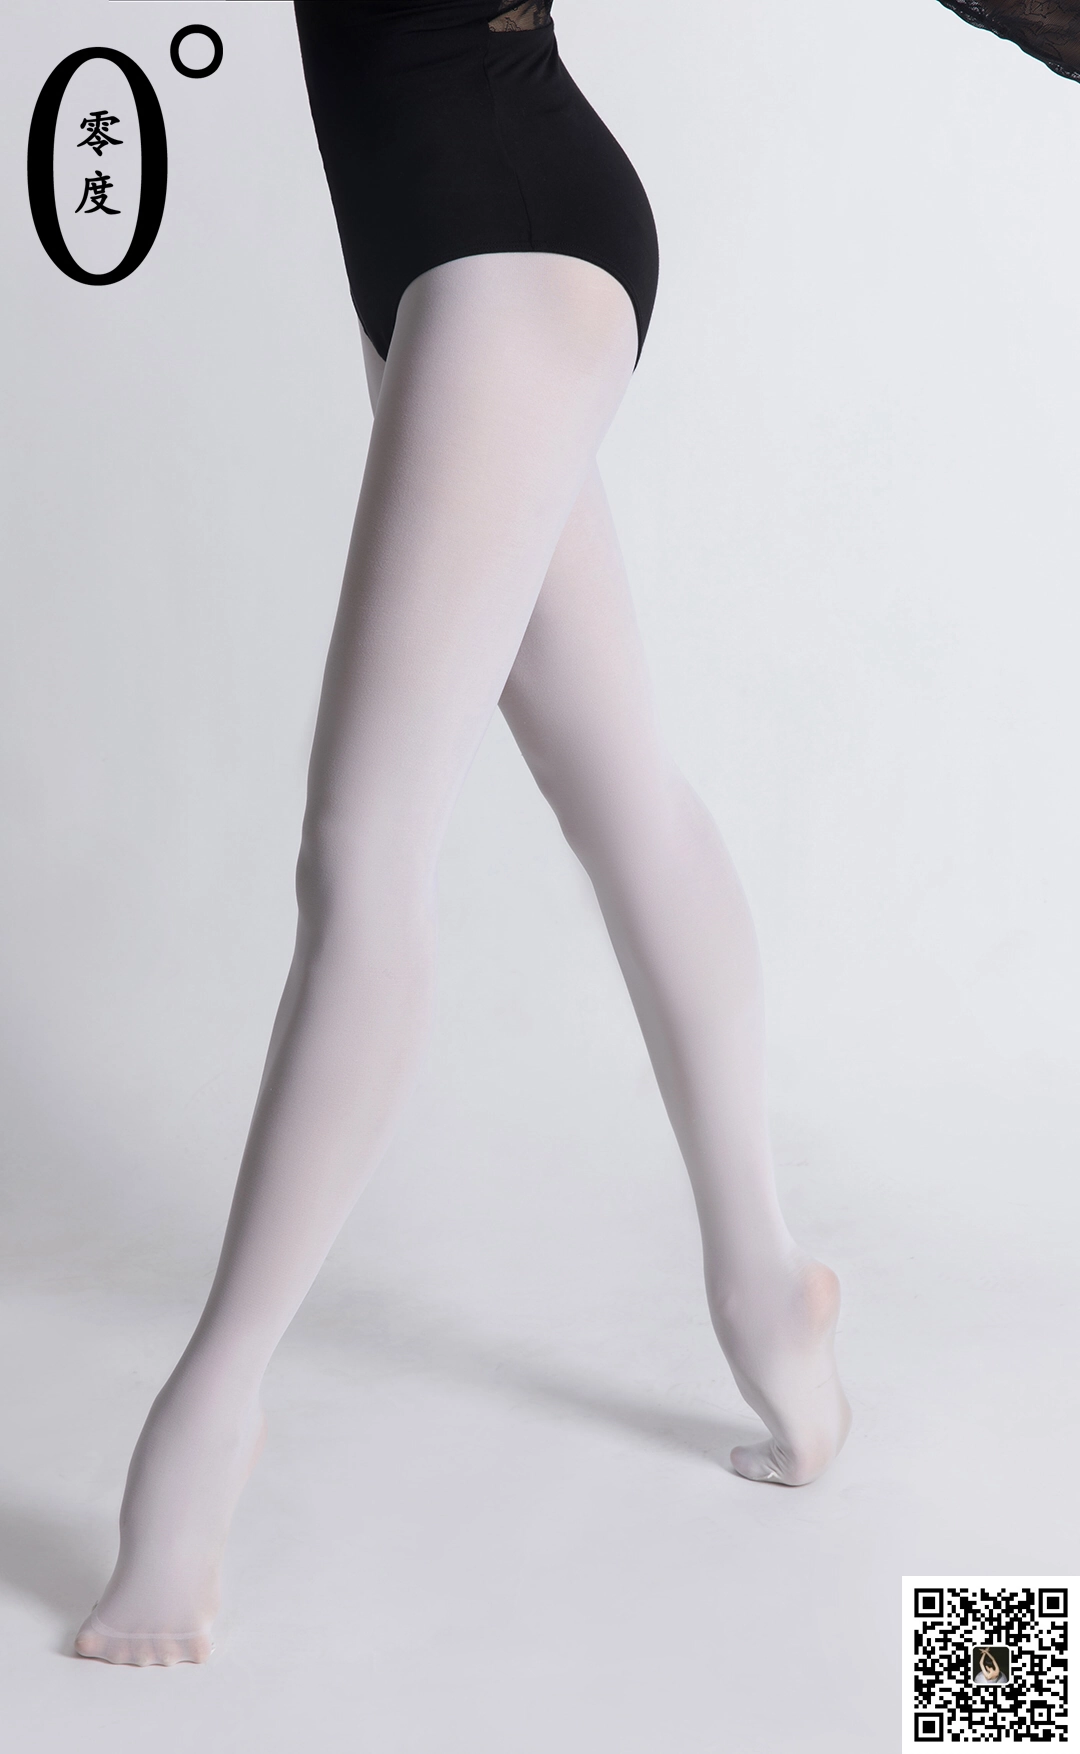 [LD零度摄影]NO.019 舞蹈老师晶晶 黑色透视镂空连体衣加白色丝袜美腿性感私房写真集,